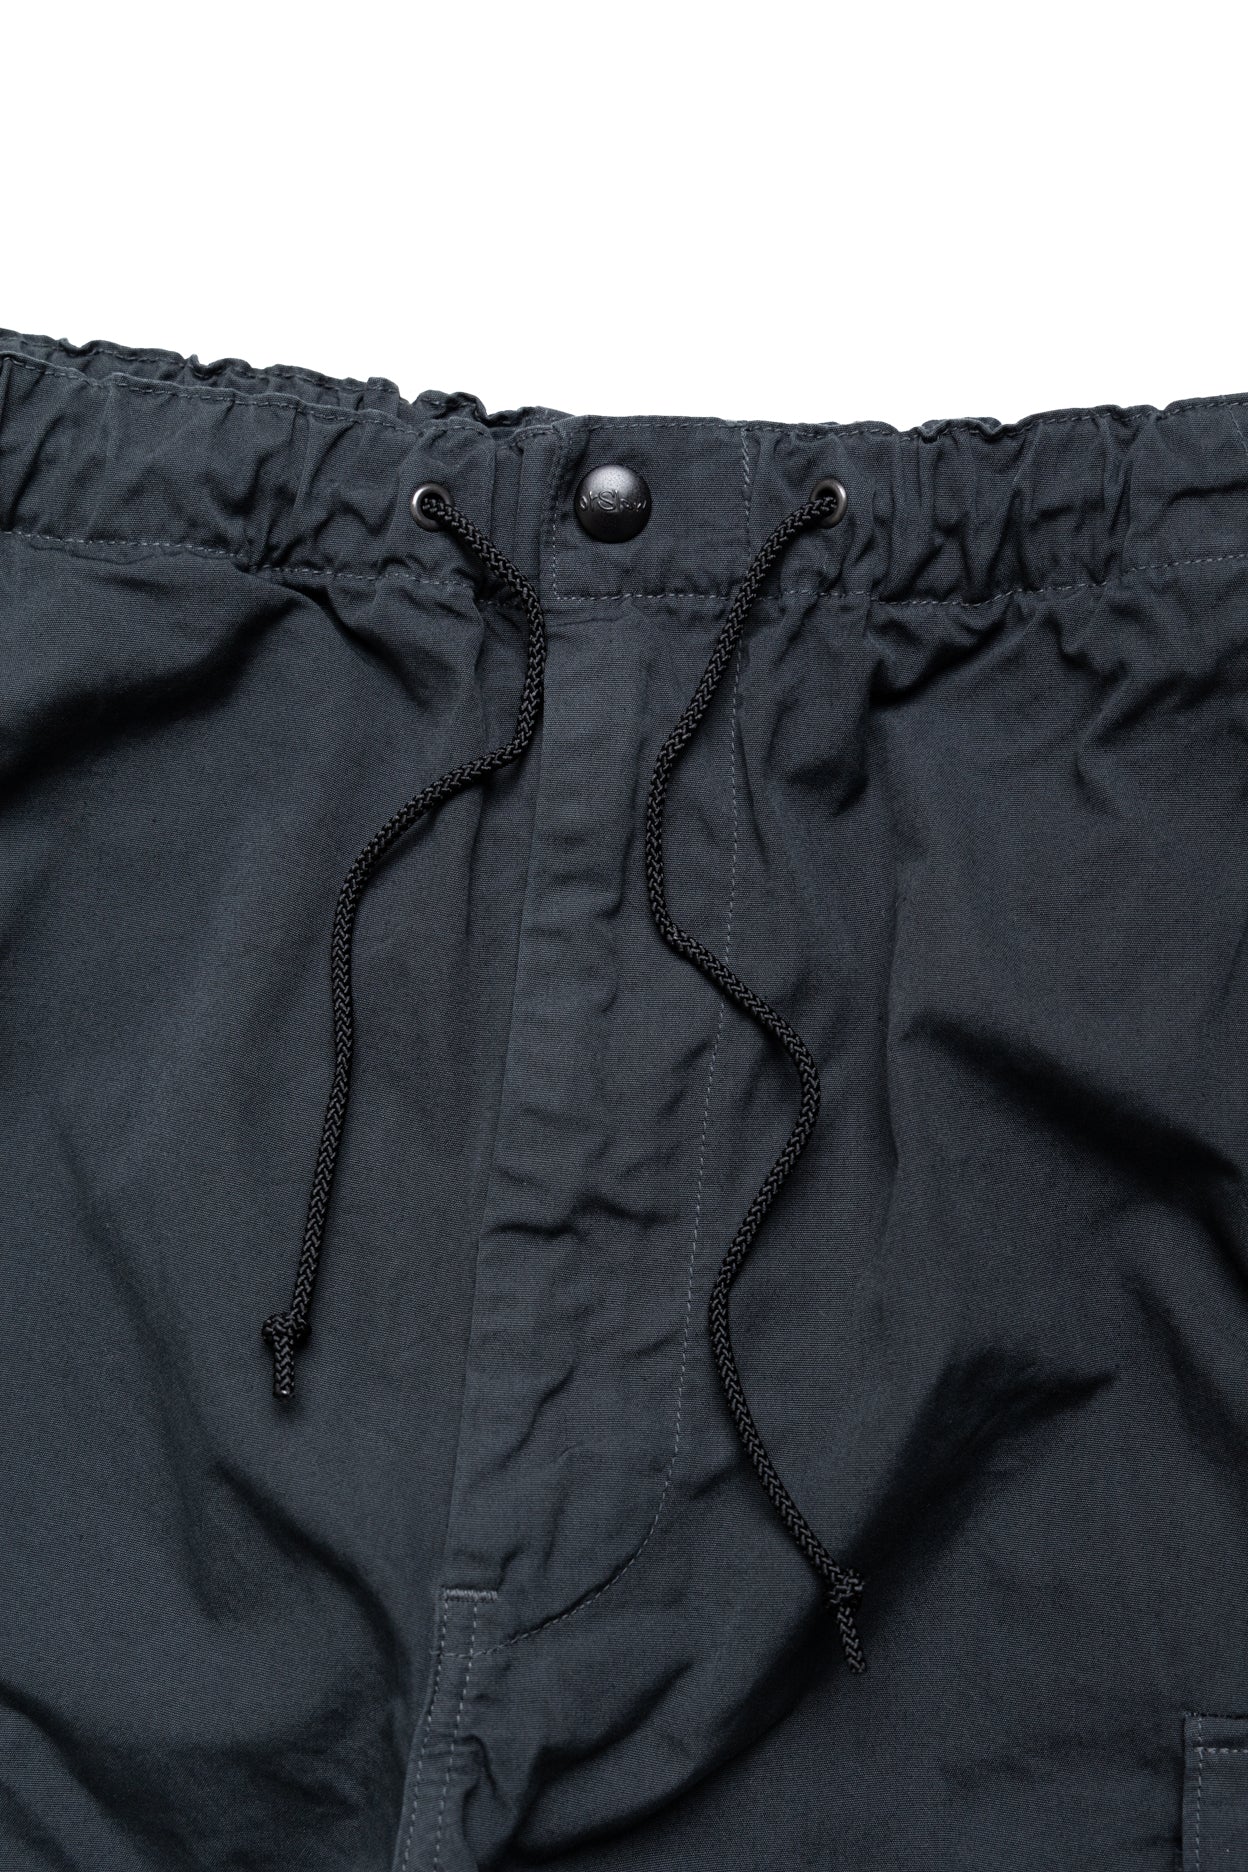 Easy Cargo Pants - Charcoal Grey